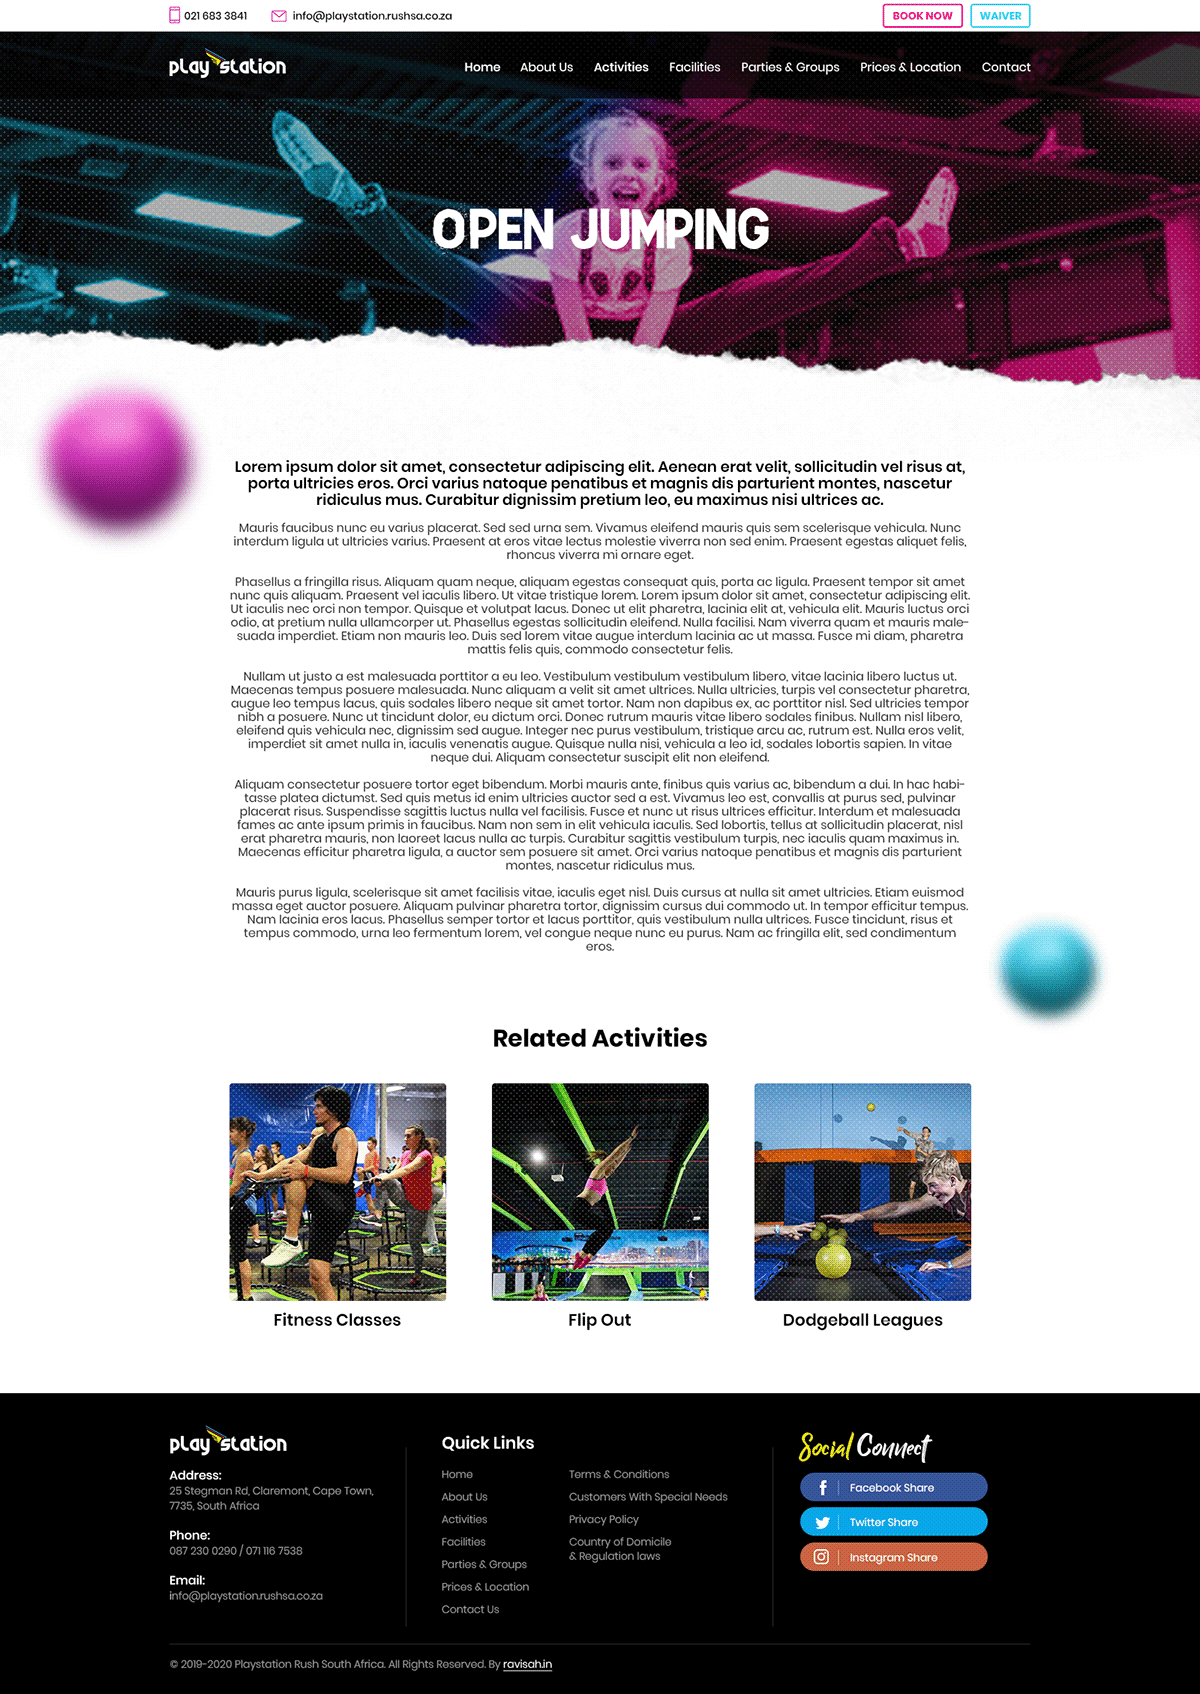 Rush Playstation Website Design